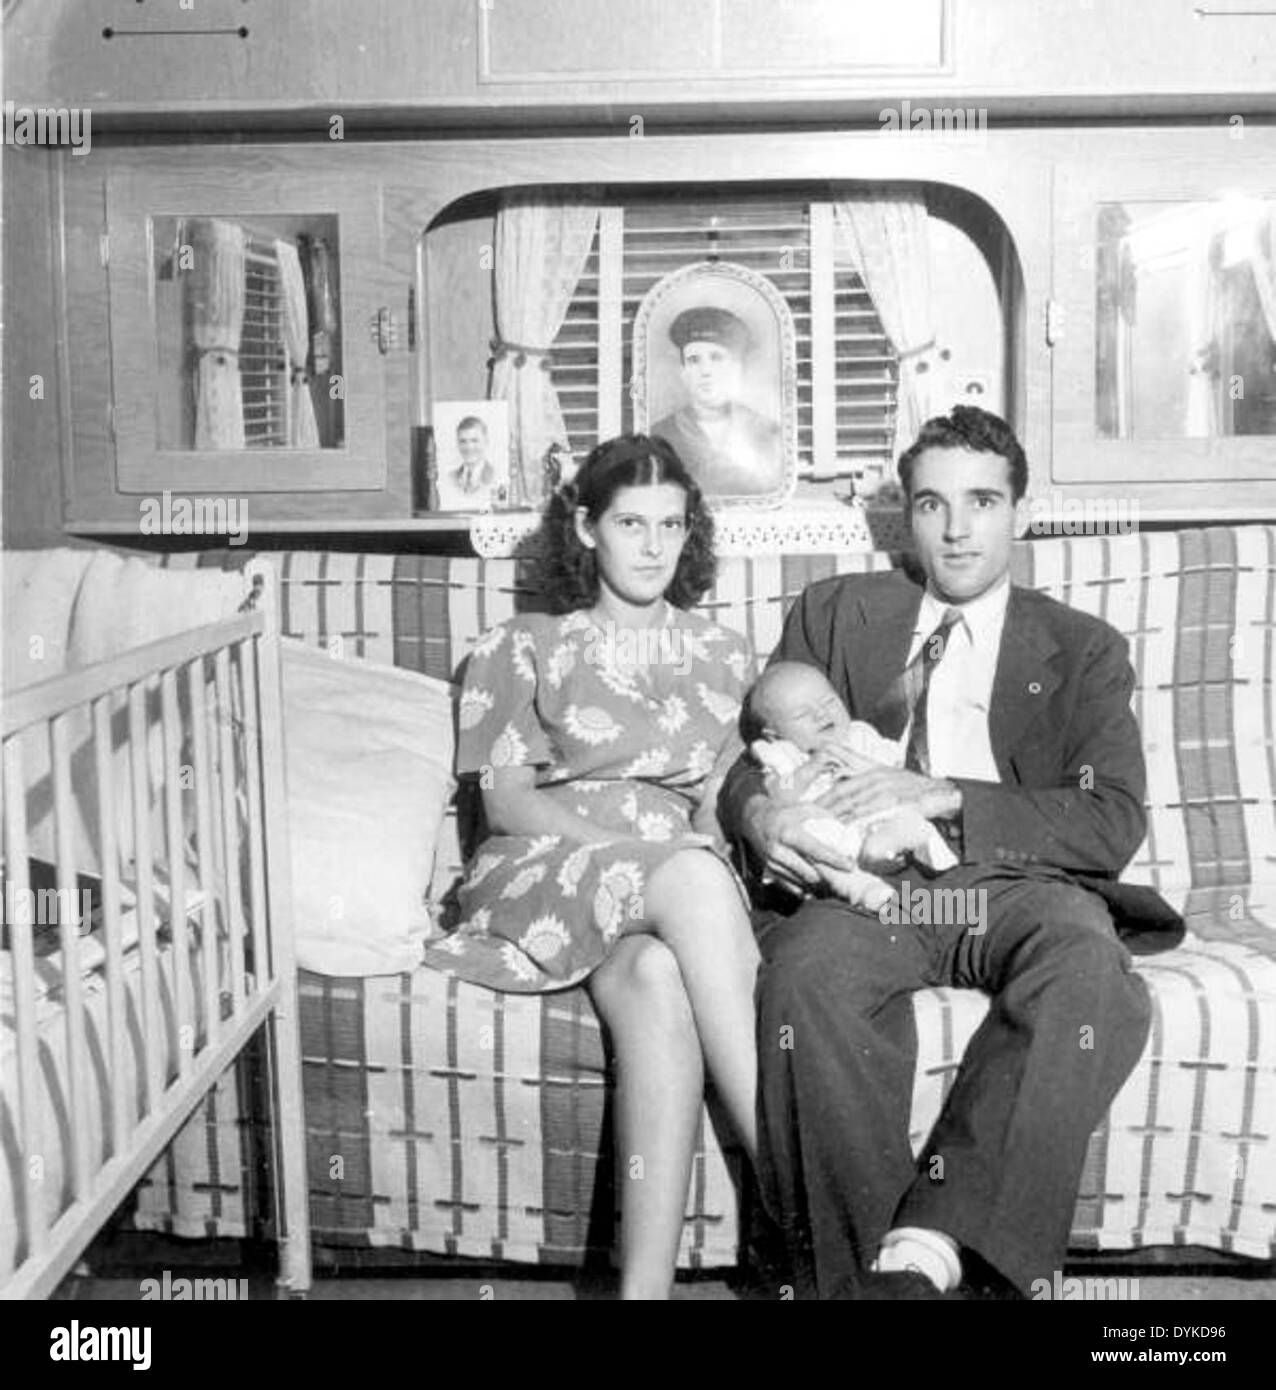 Stickles family in their trailer - Sarasota, Florida Stock Photo